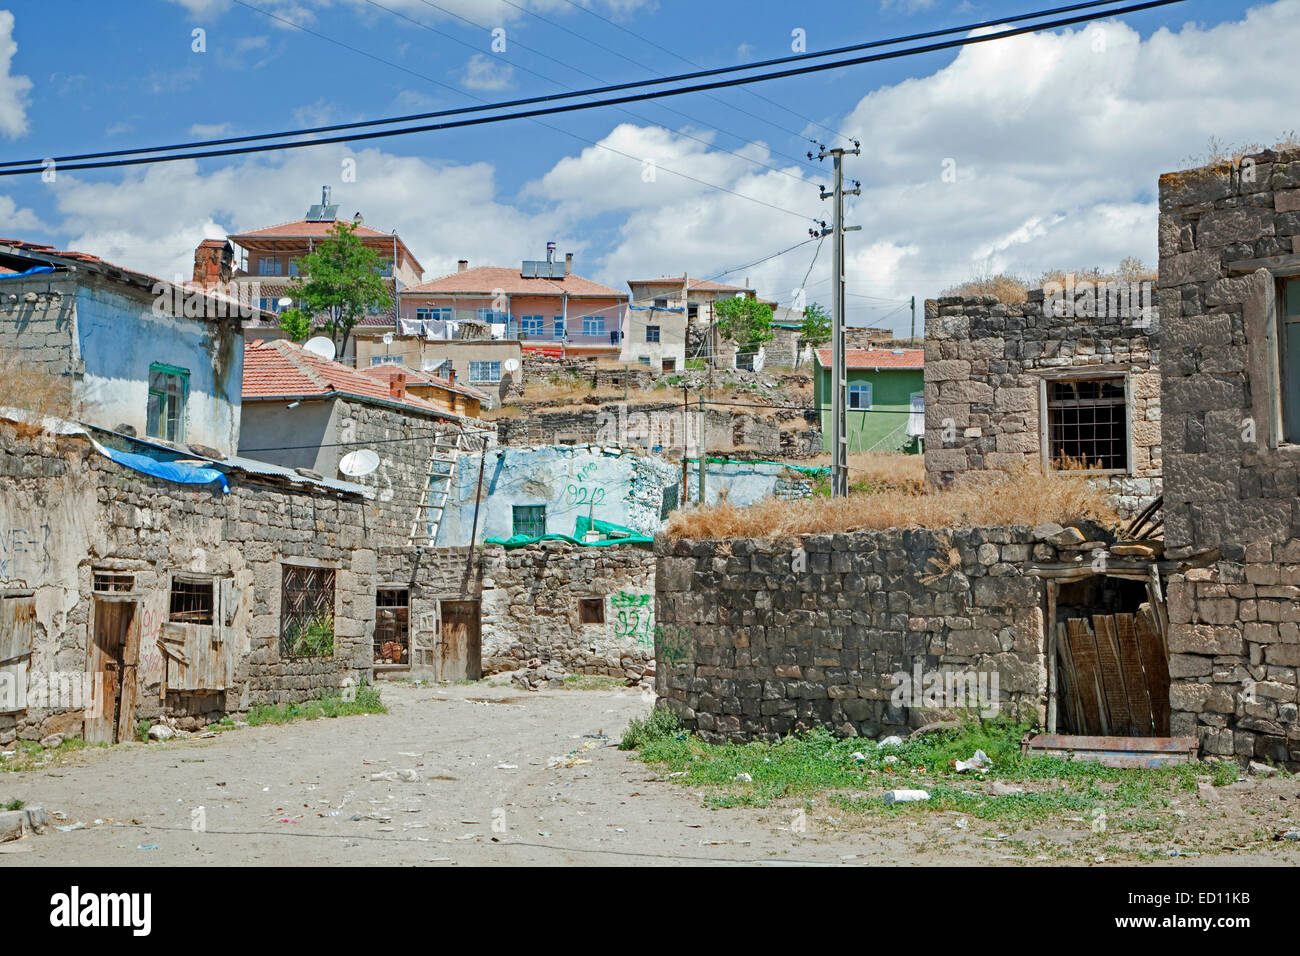 calle-con-pobres-casas-en-la-aldea-turca-en-anatolia-central-turquia-ed11kb.jpg